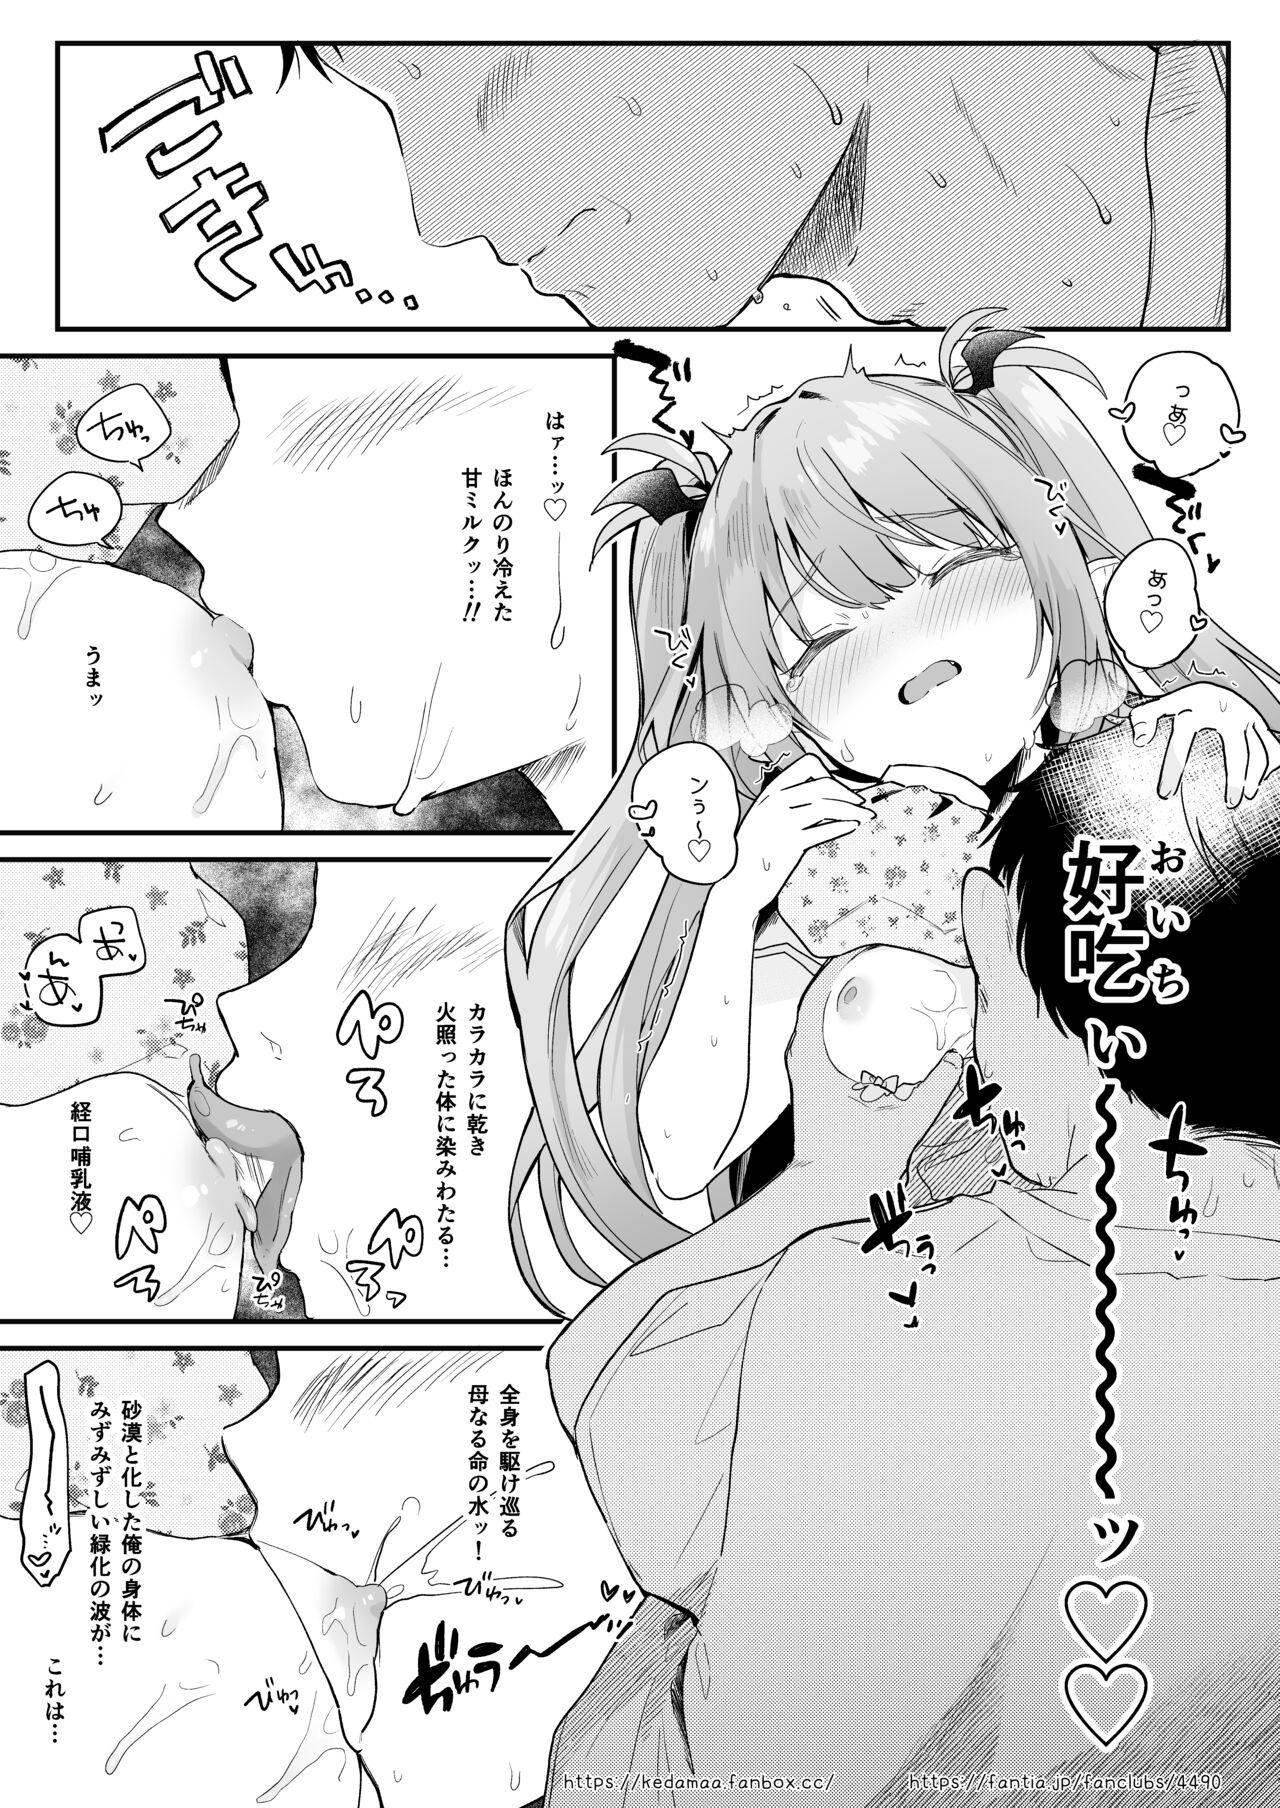 Air Con Kowareta Hi Rurumu-san to Asedaku Sex suru Manga 6